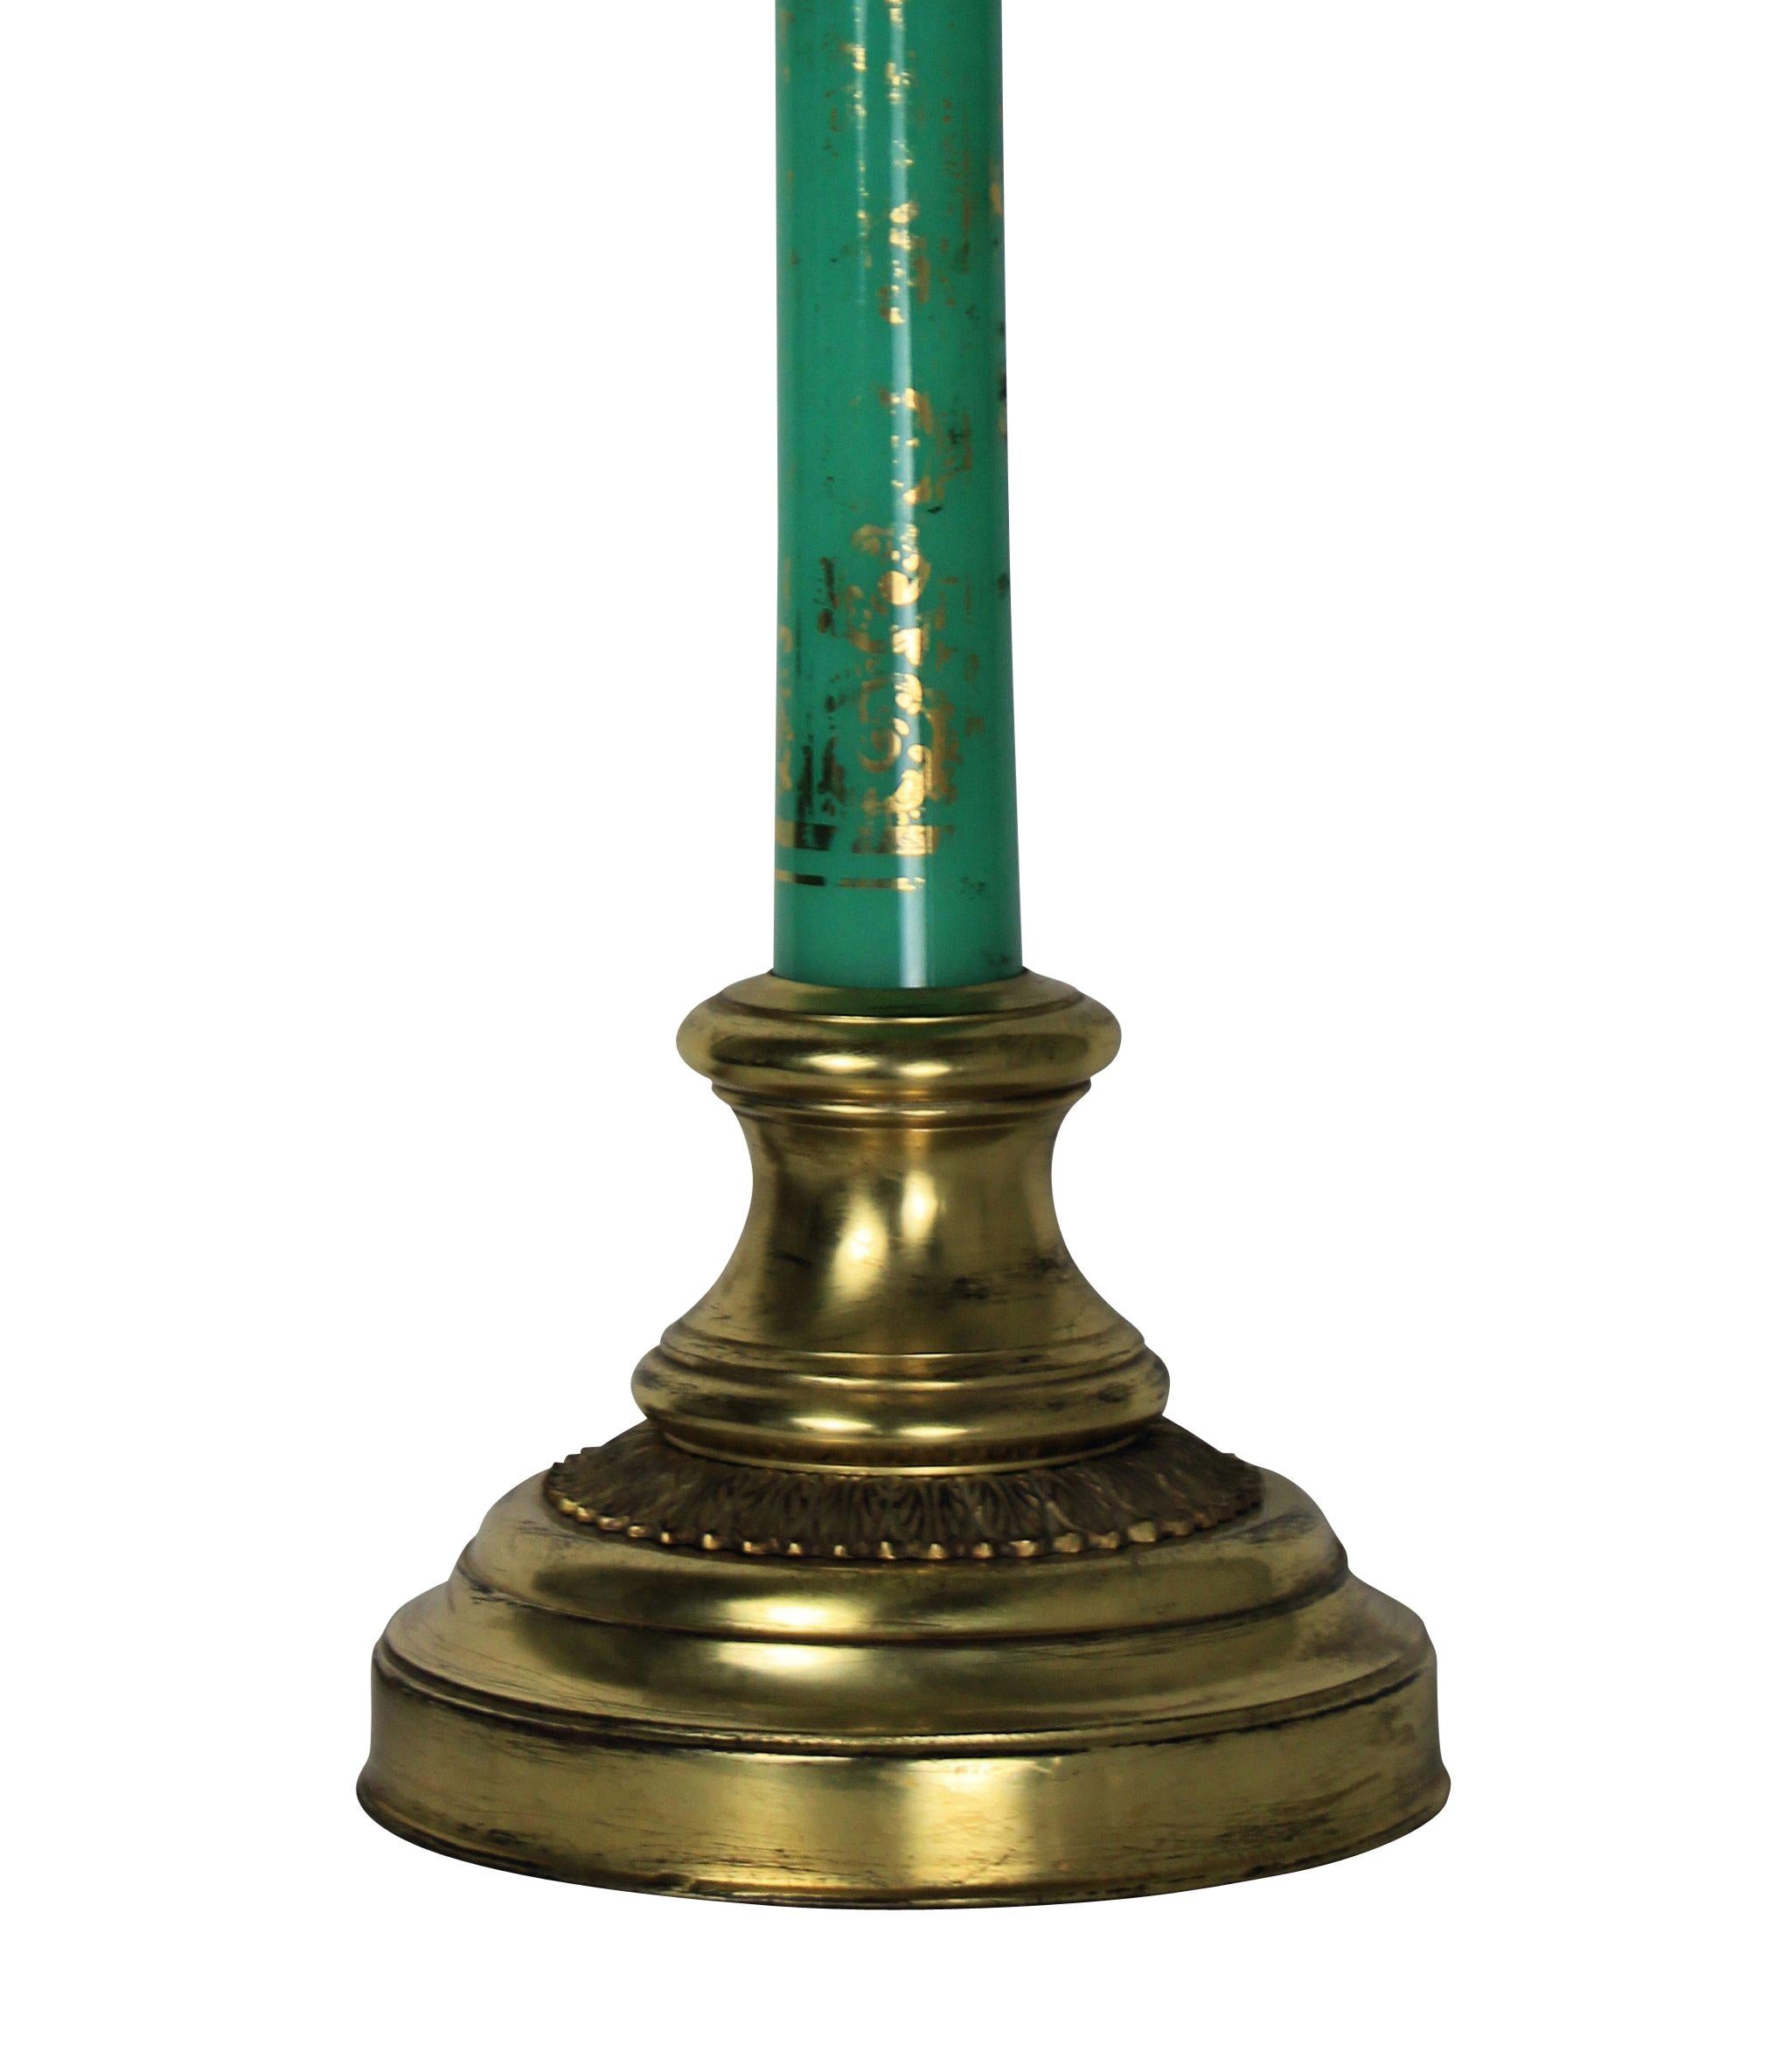 20th Century Italian Gilt Metal and Églomisé Lamp